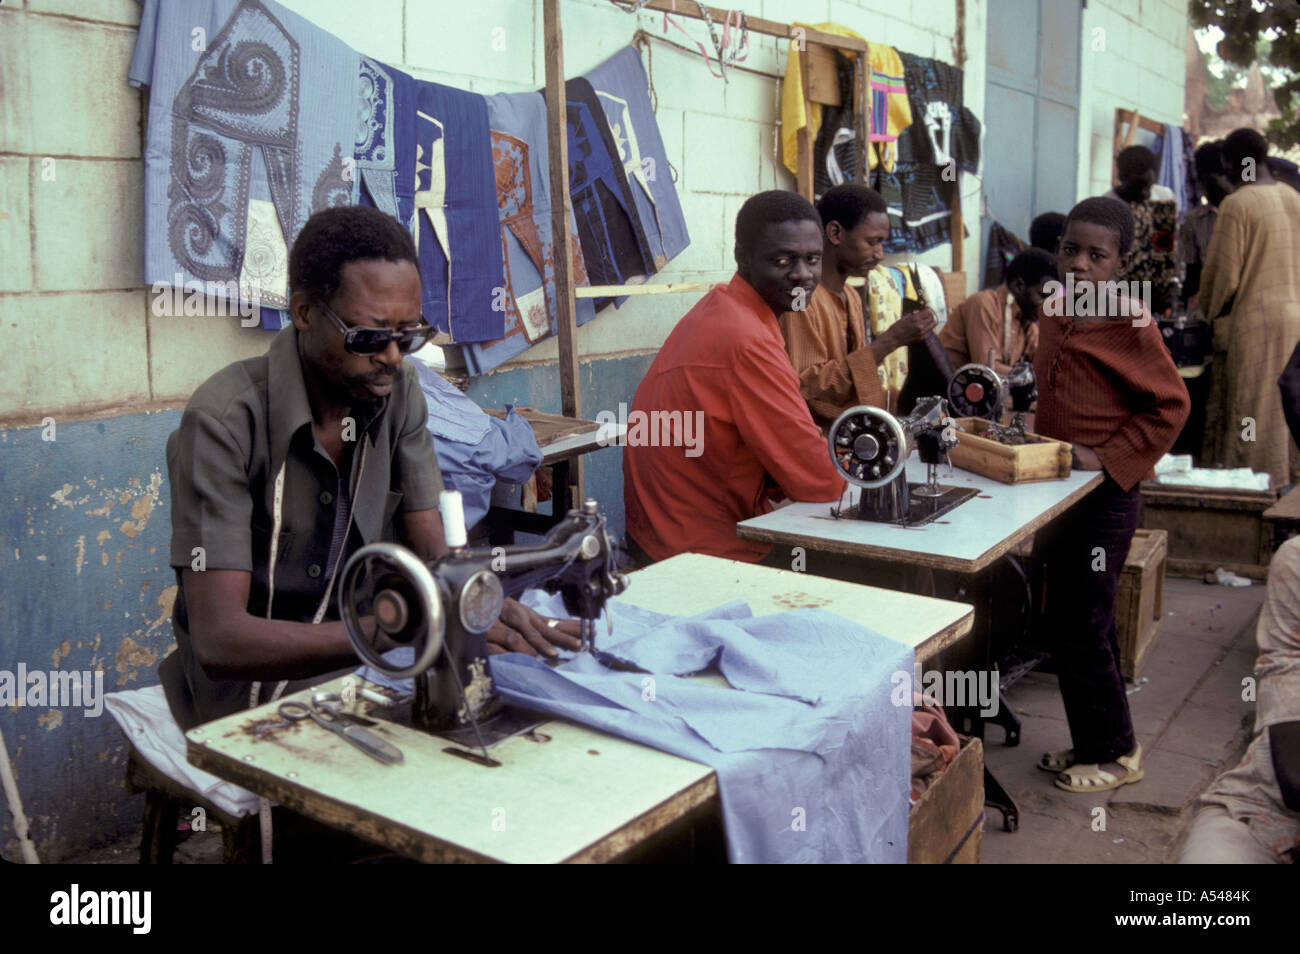 Painet hn1709 3092 Mali Bamako tailleurs hommes travaillent au pays en développement, de pays moins développés économiquement émergentes de la culture Banque D'Images